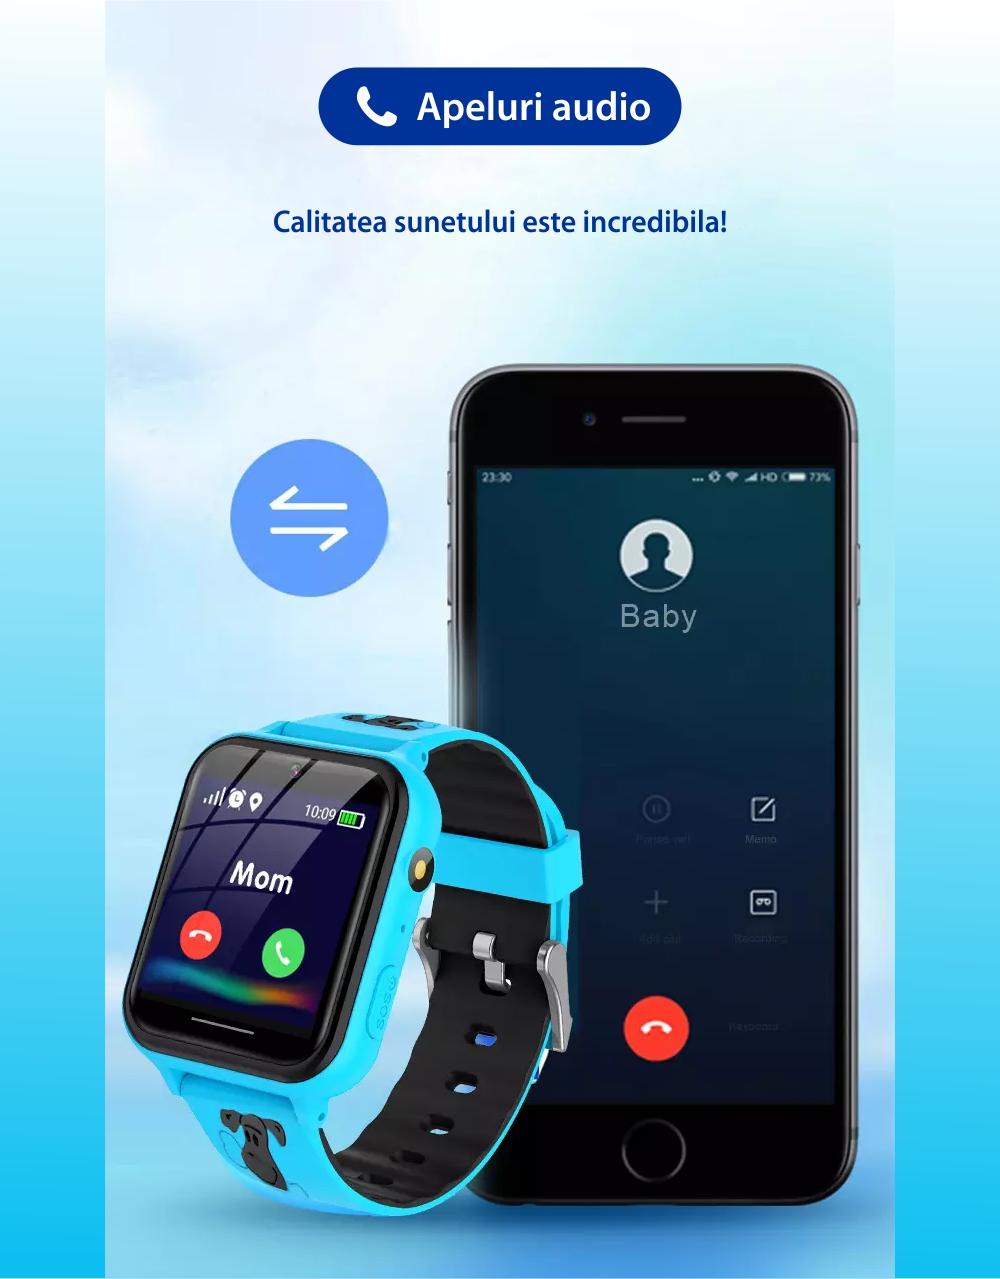 Ceas Smartwatch Pentru Copii YQT A2Z fara GPS, cu Functie telefon, 7 Jocuri, Camera, Album, Lanterna, Albastru